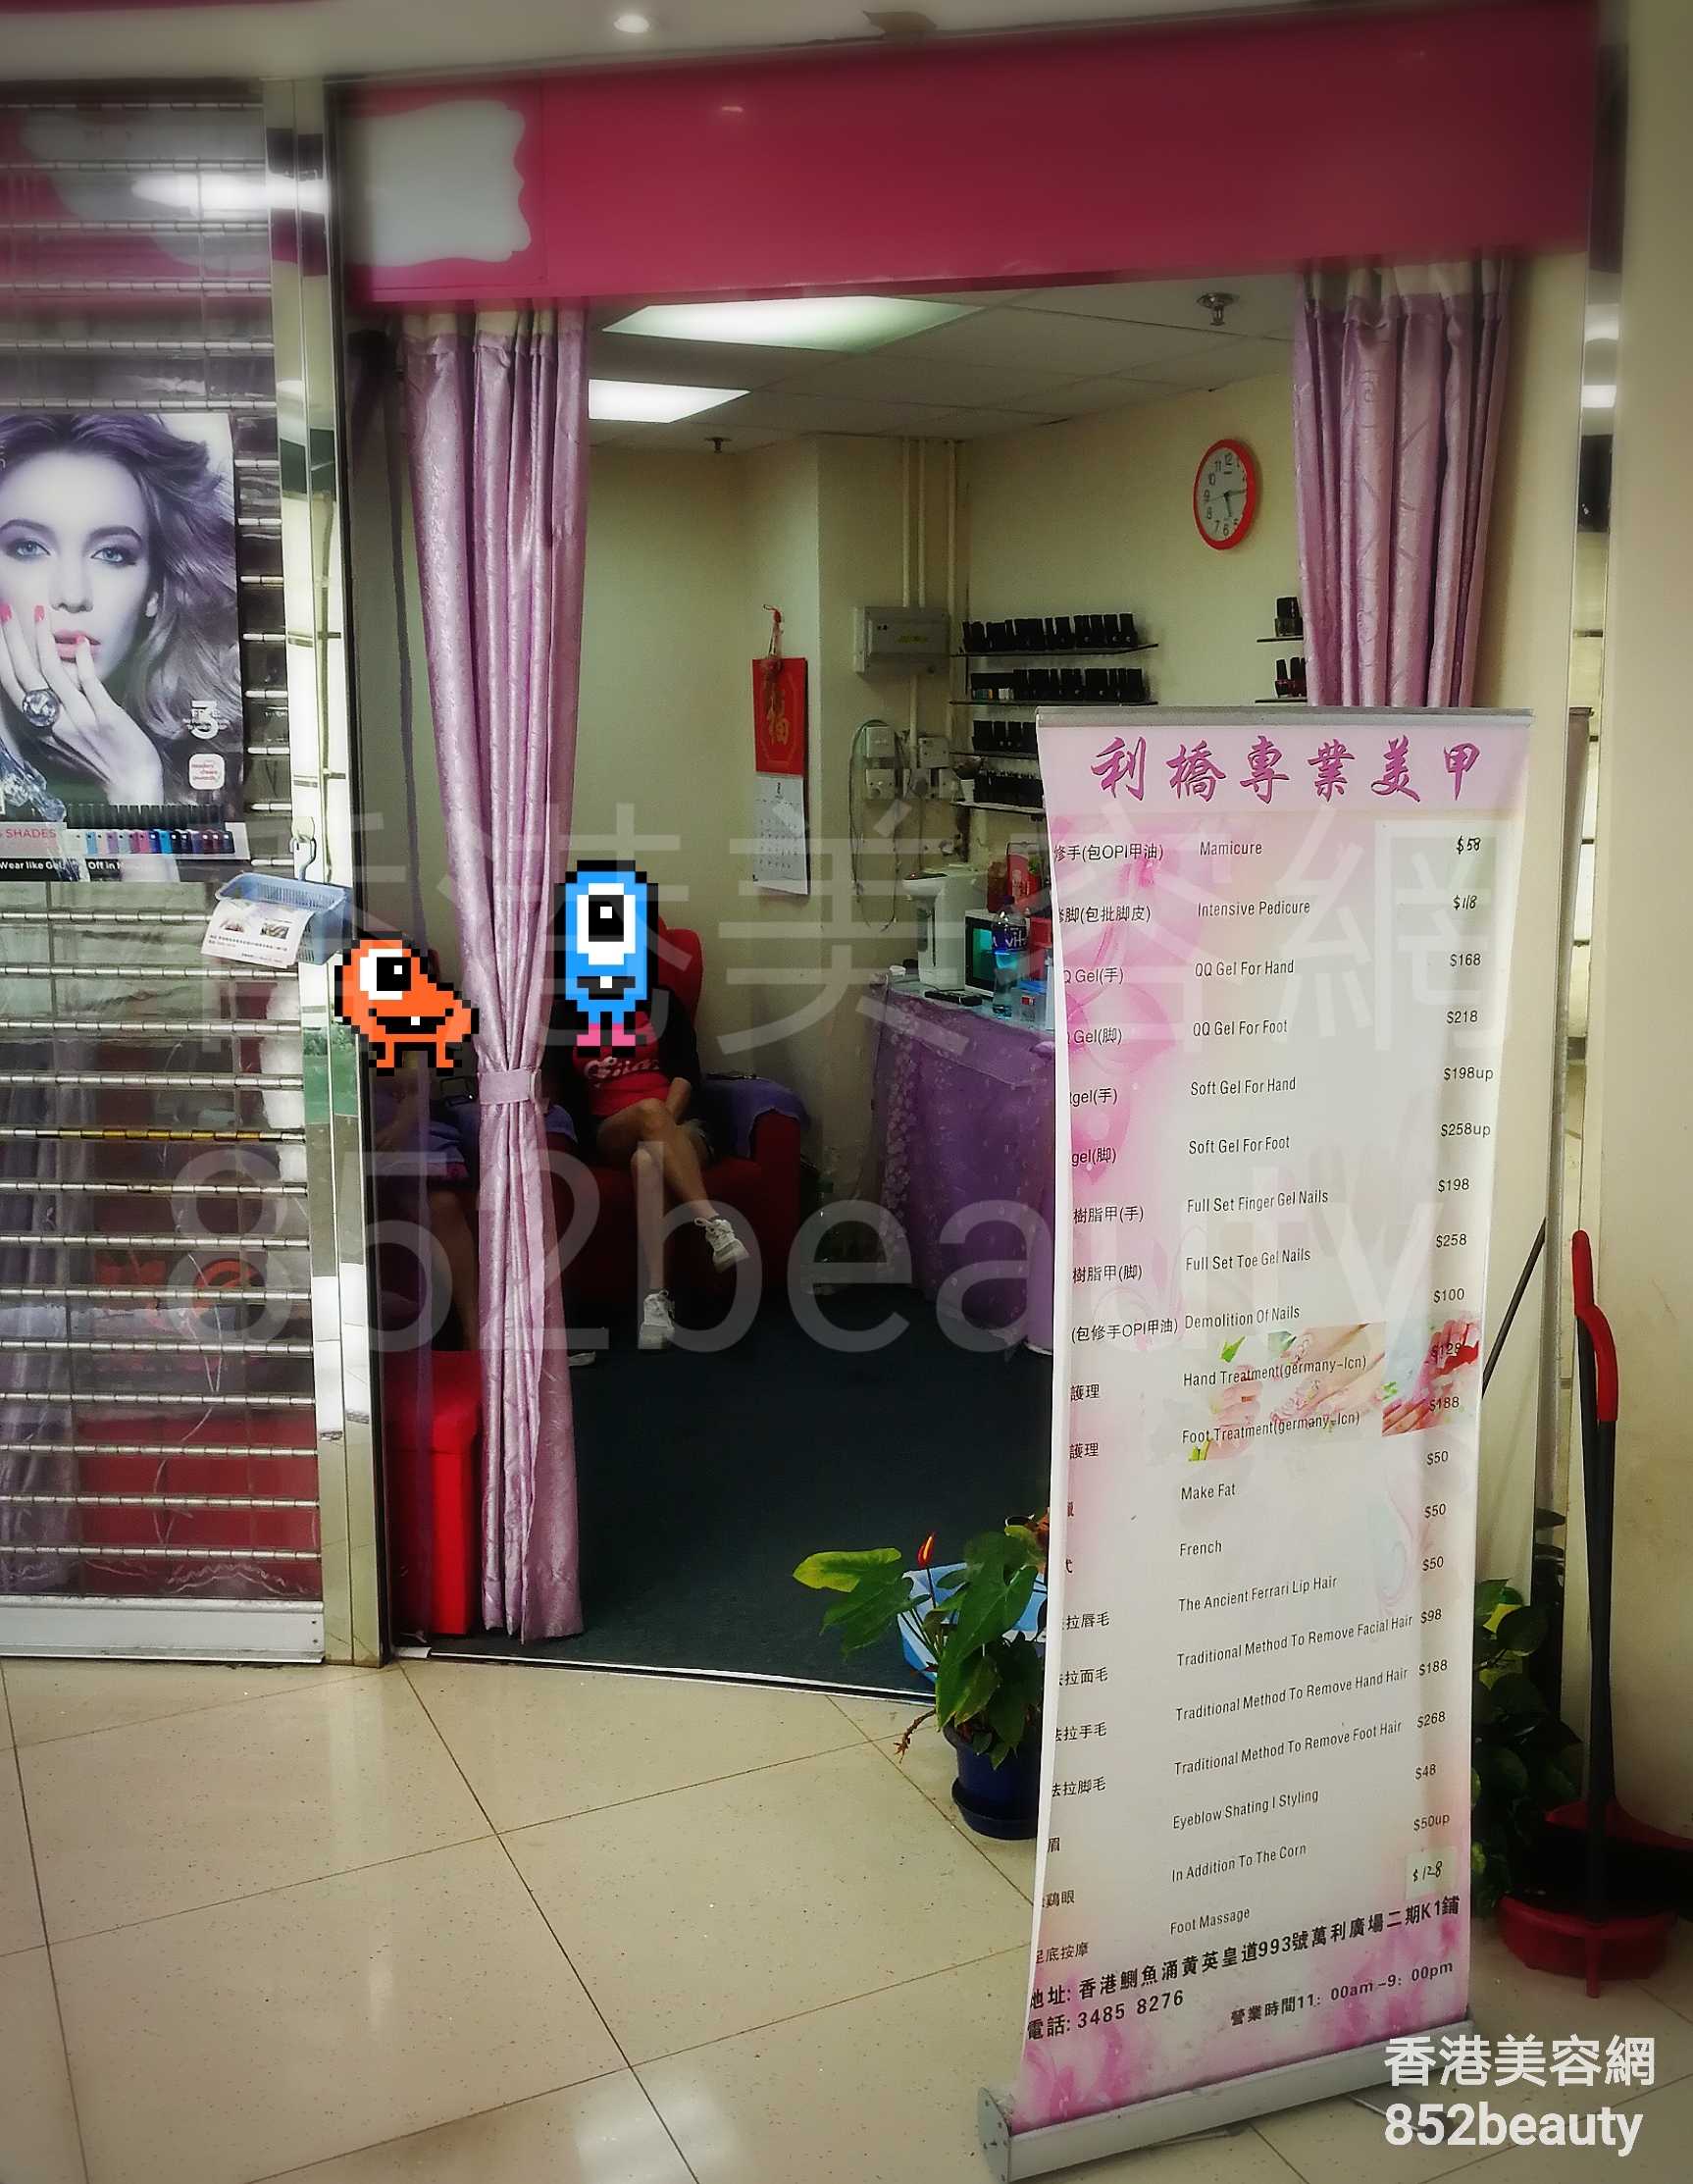 香港美容網 Hong Kong Beauty Salon 美容院 / 美容師: 利橋專業美甲